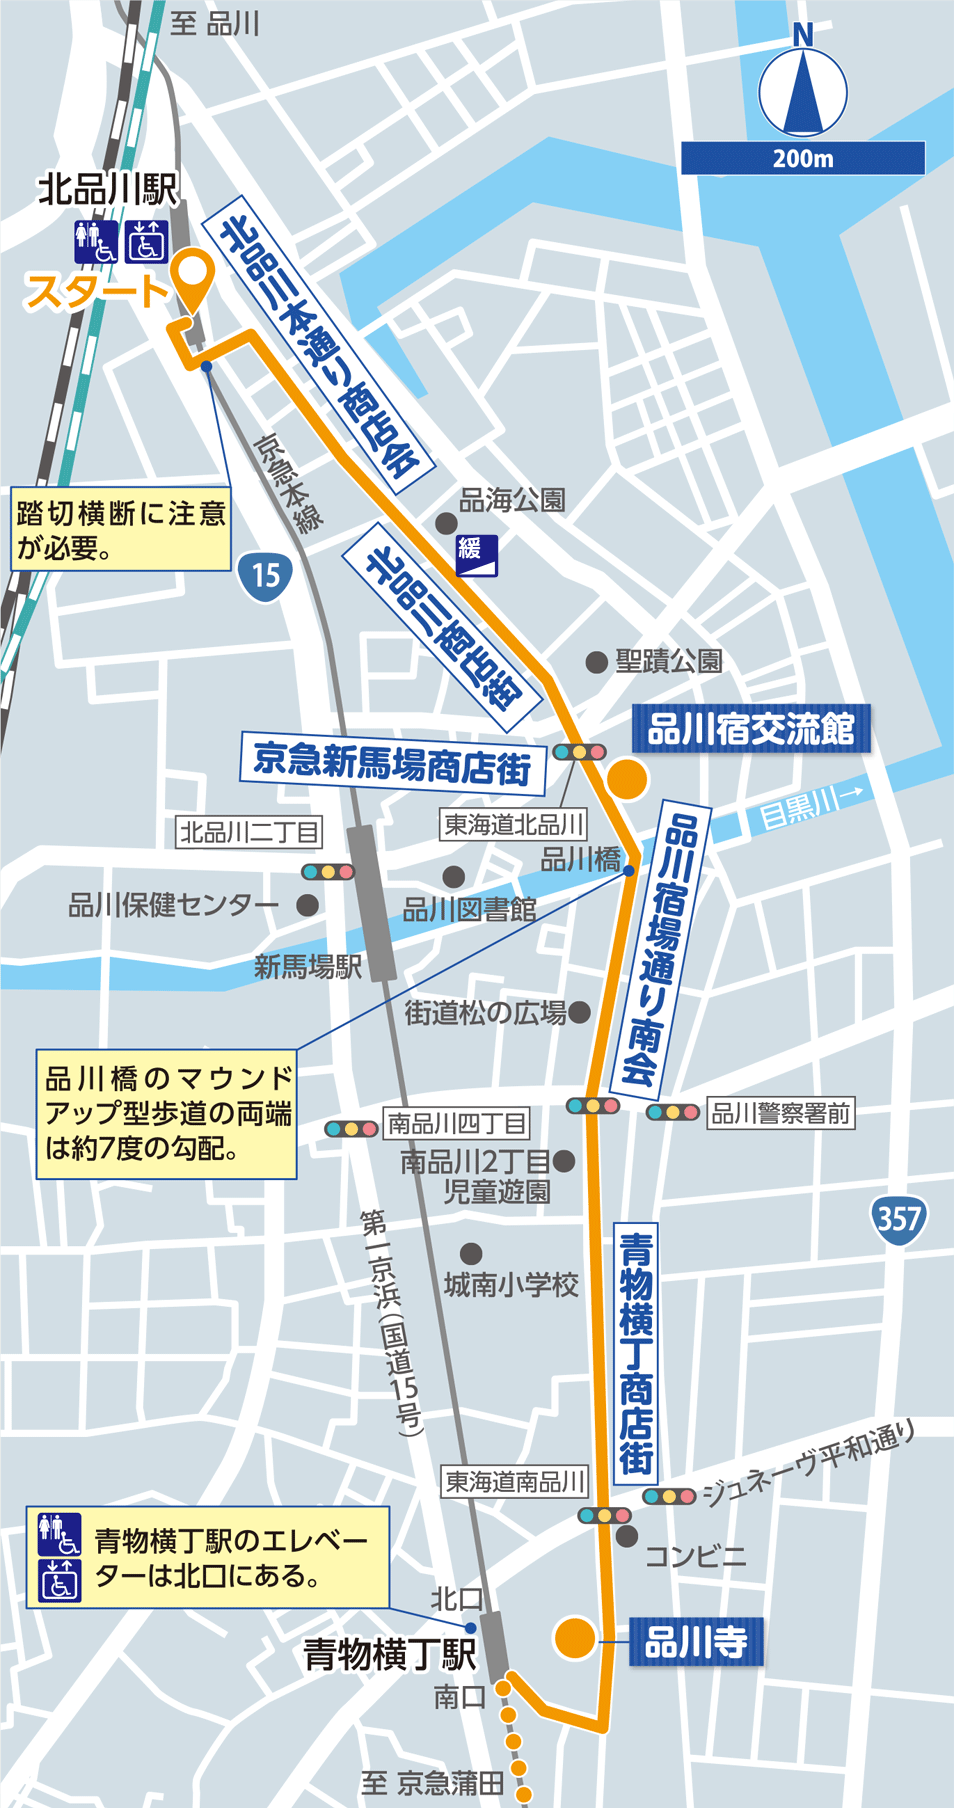 品川・羽田 詳細マップ1